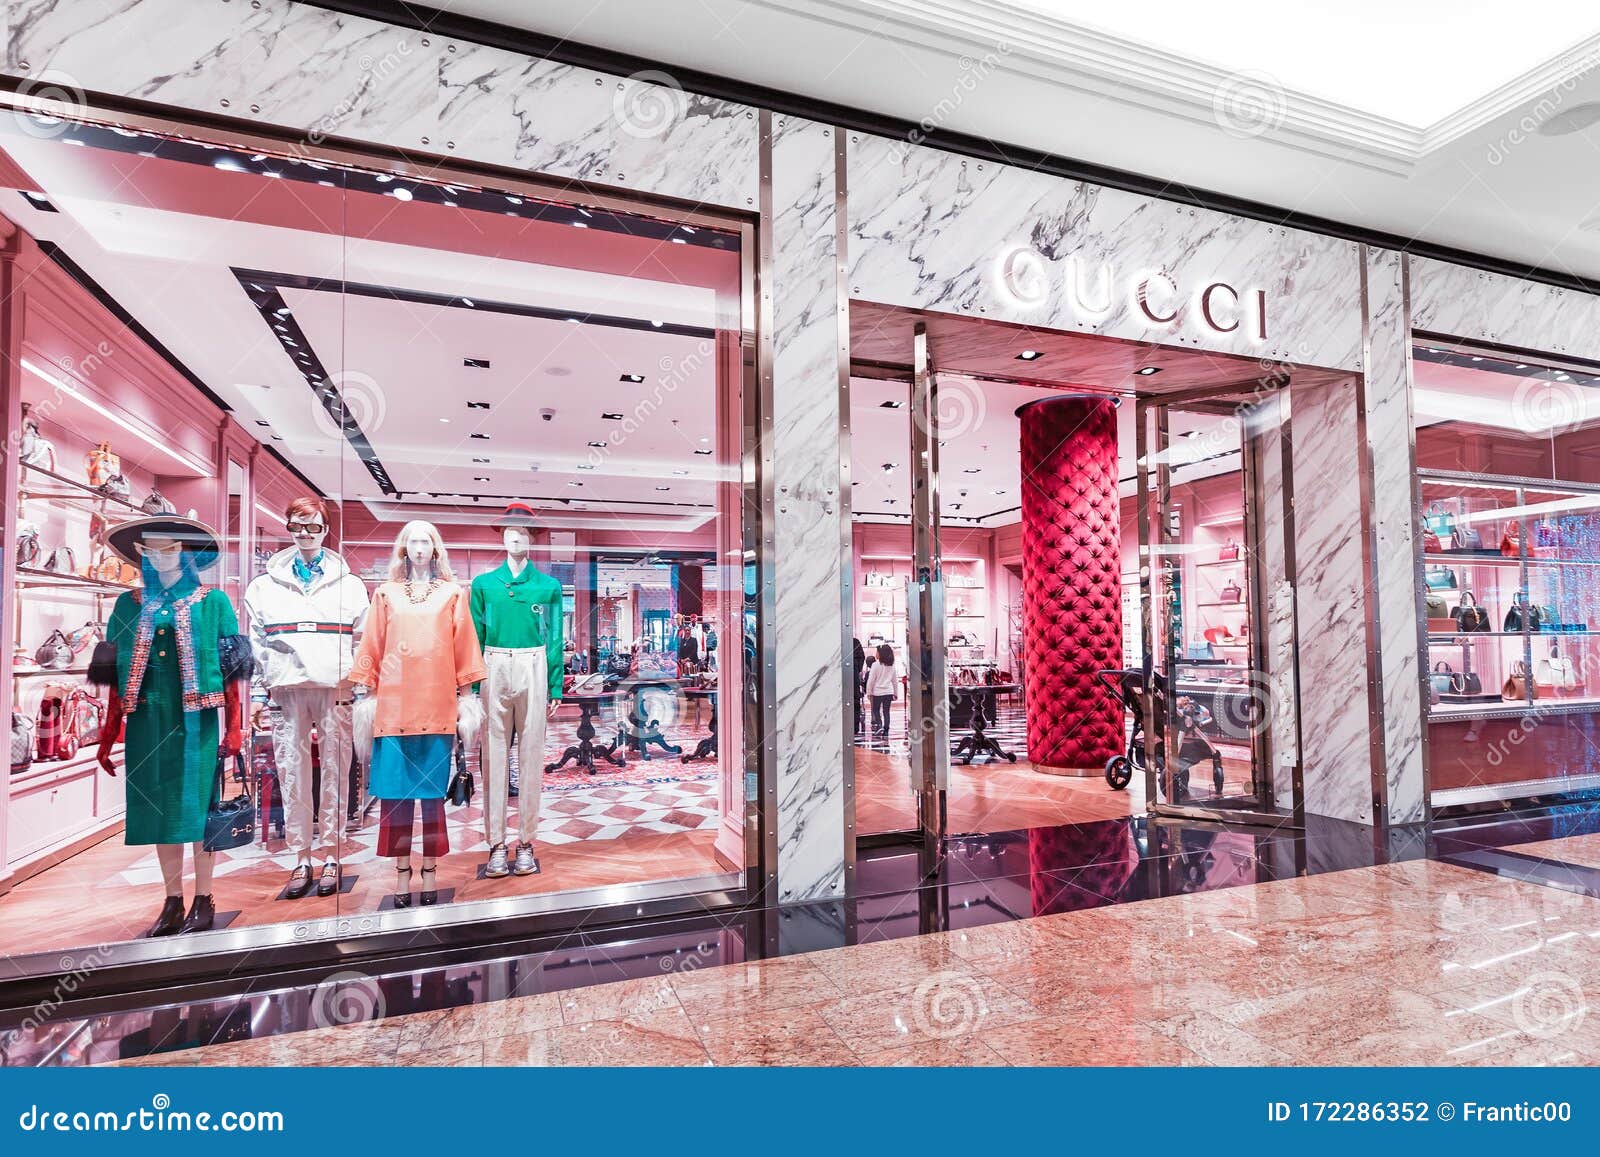 Luxury Fashion Store Showcase in Emirates Editorial Photography - Image of emirates, clothing: